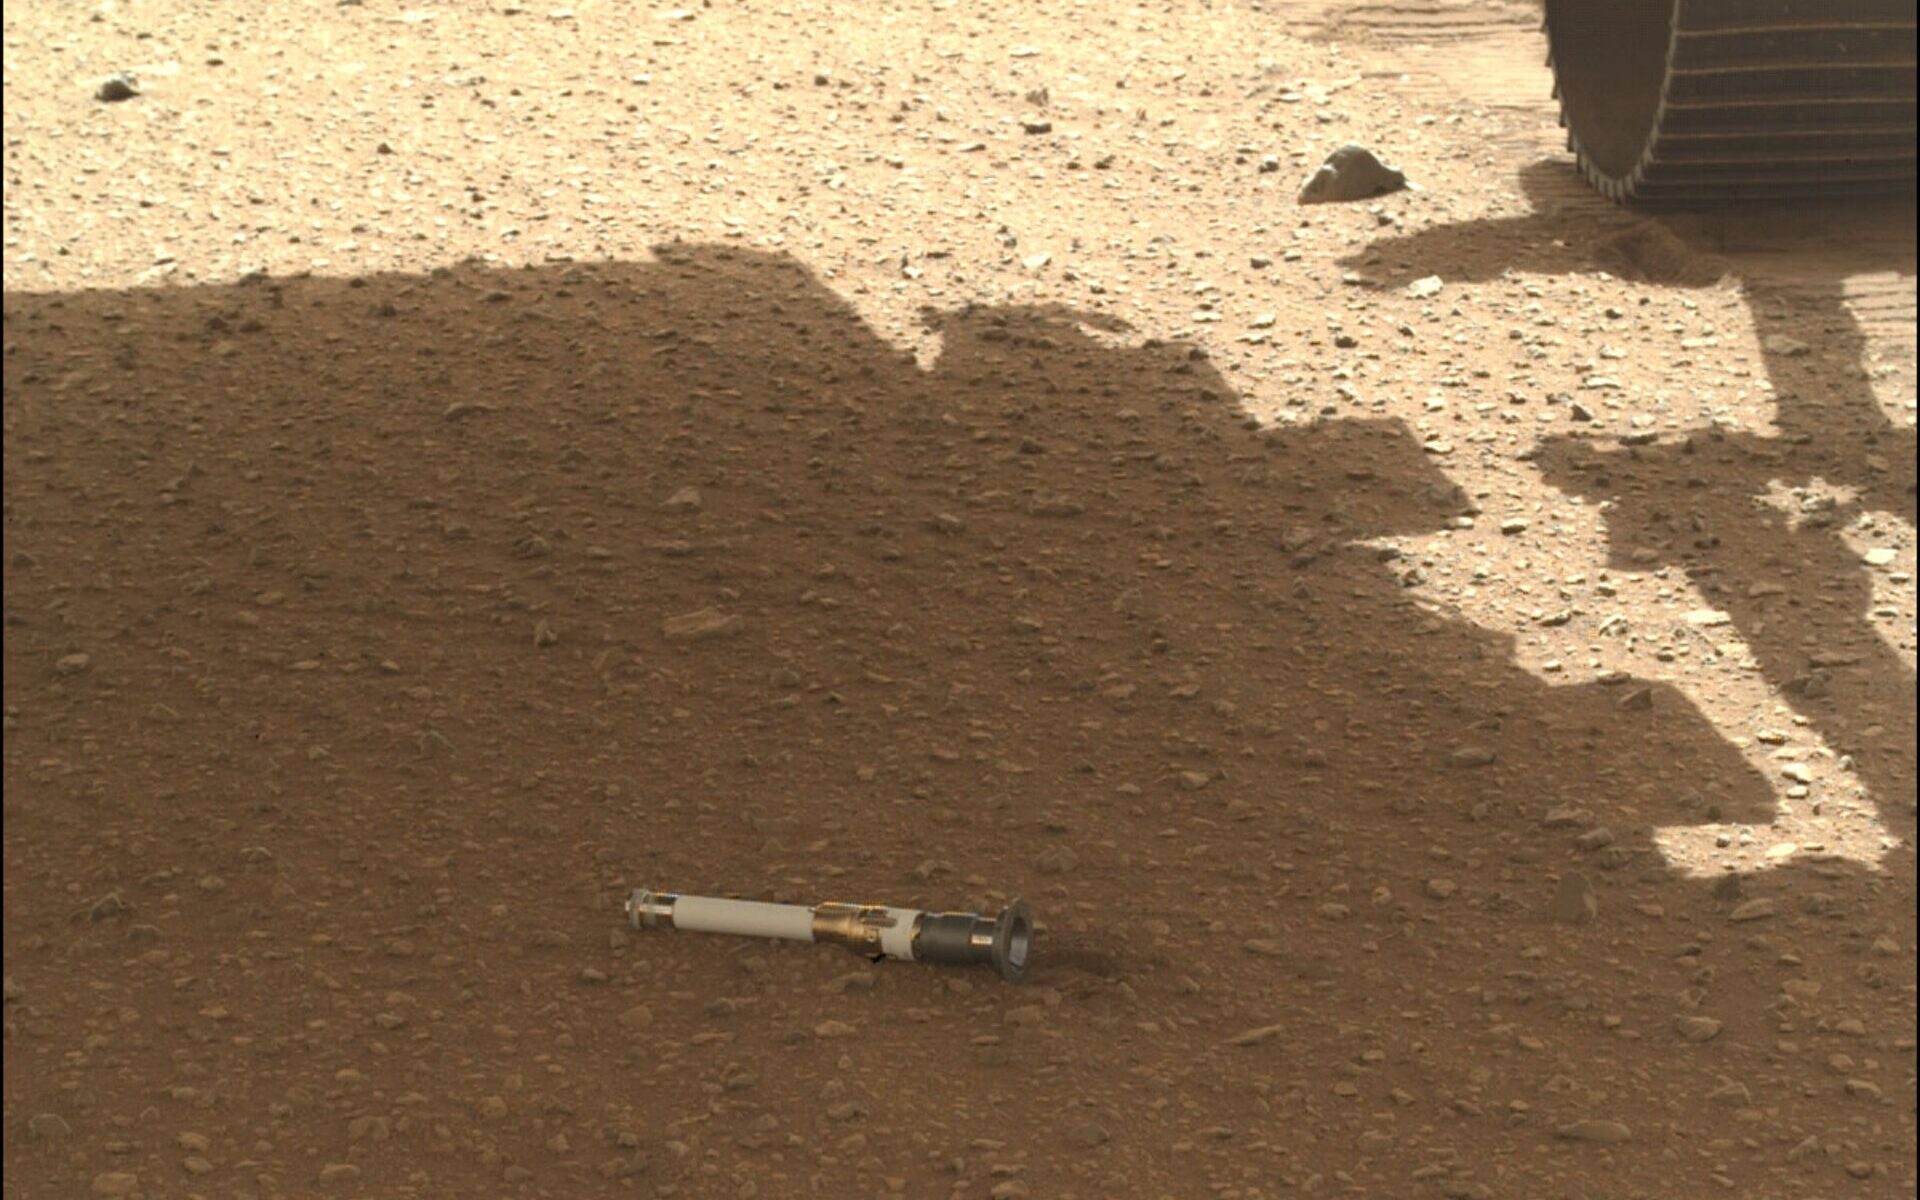 La razón por la que no hemos encontrado vida en Marte sería nuestra tecnología